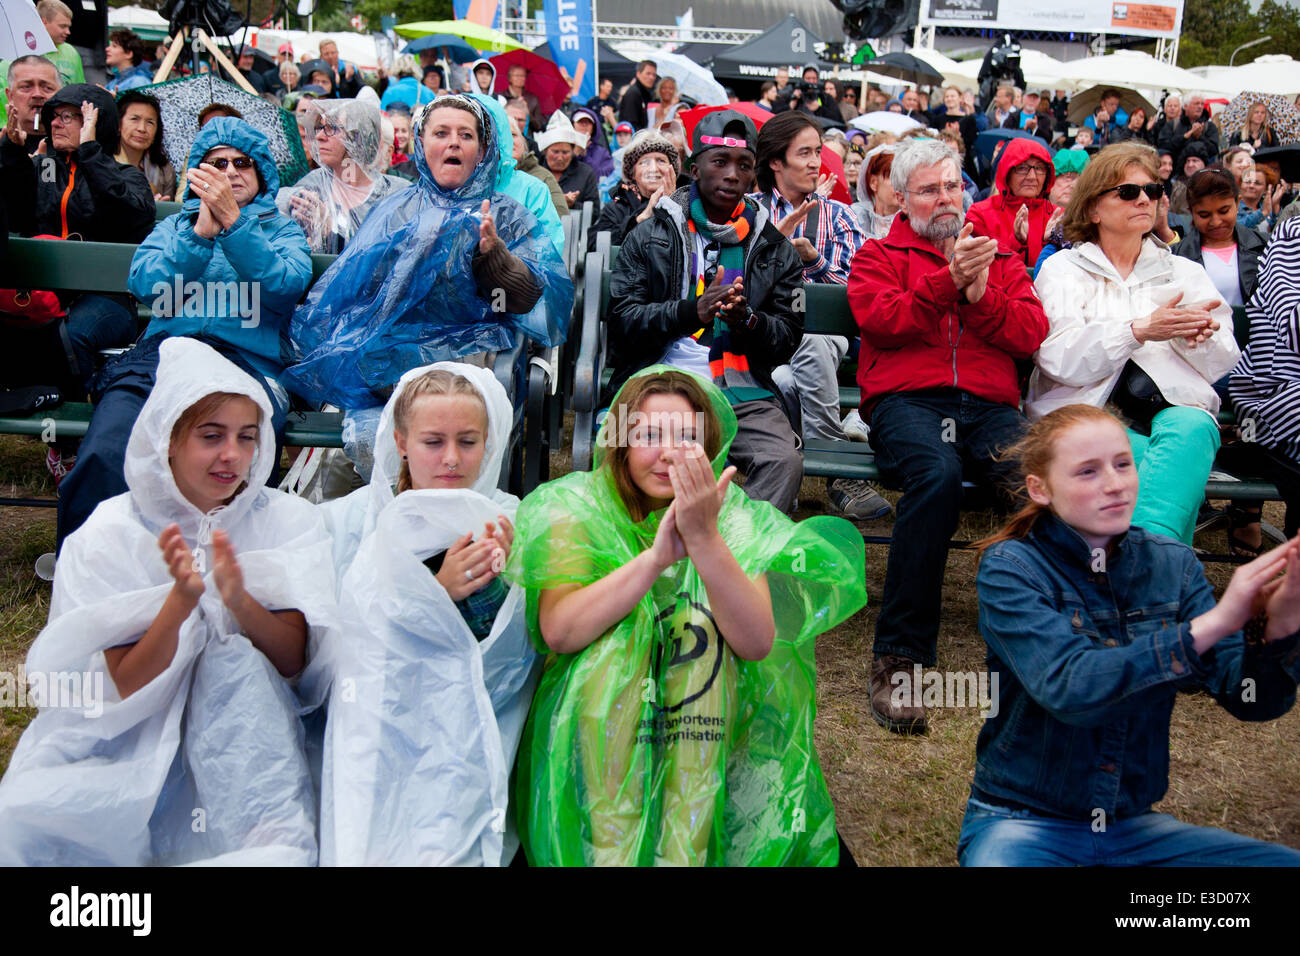 Folkemøde på Bornholm. Publikum i regnen lytter til Johanne Schmidt-Nielsen, leder af Enhedslisten. Stock Photo